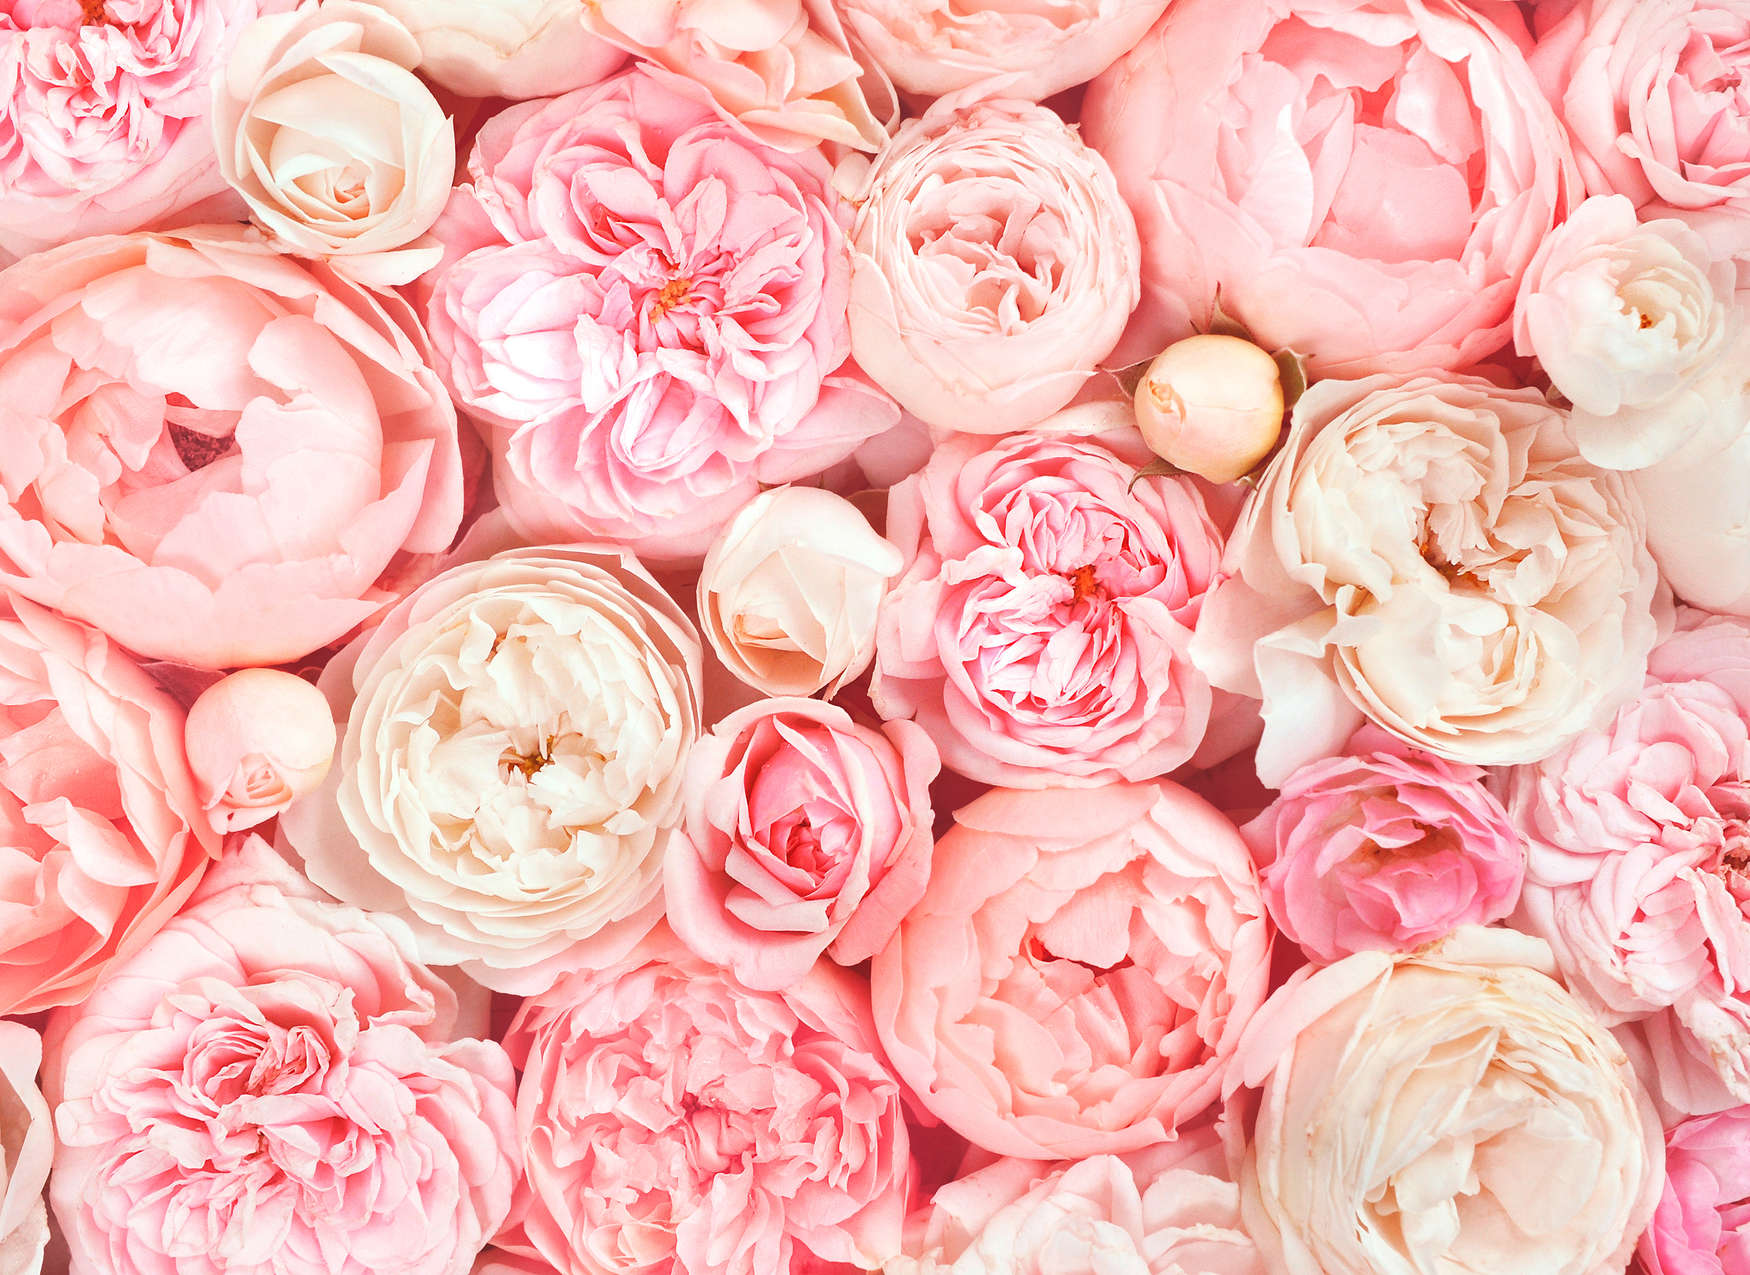             Digital behang met rozenmotief - roze, wit, crème
        